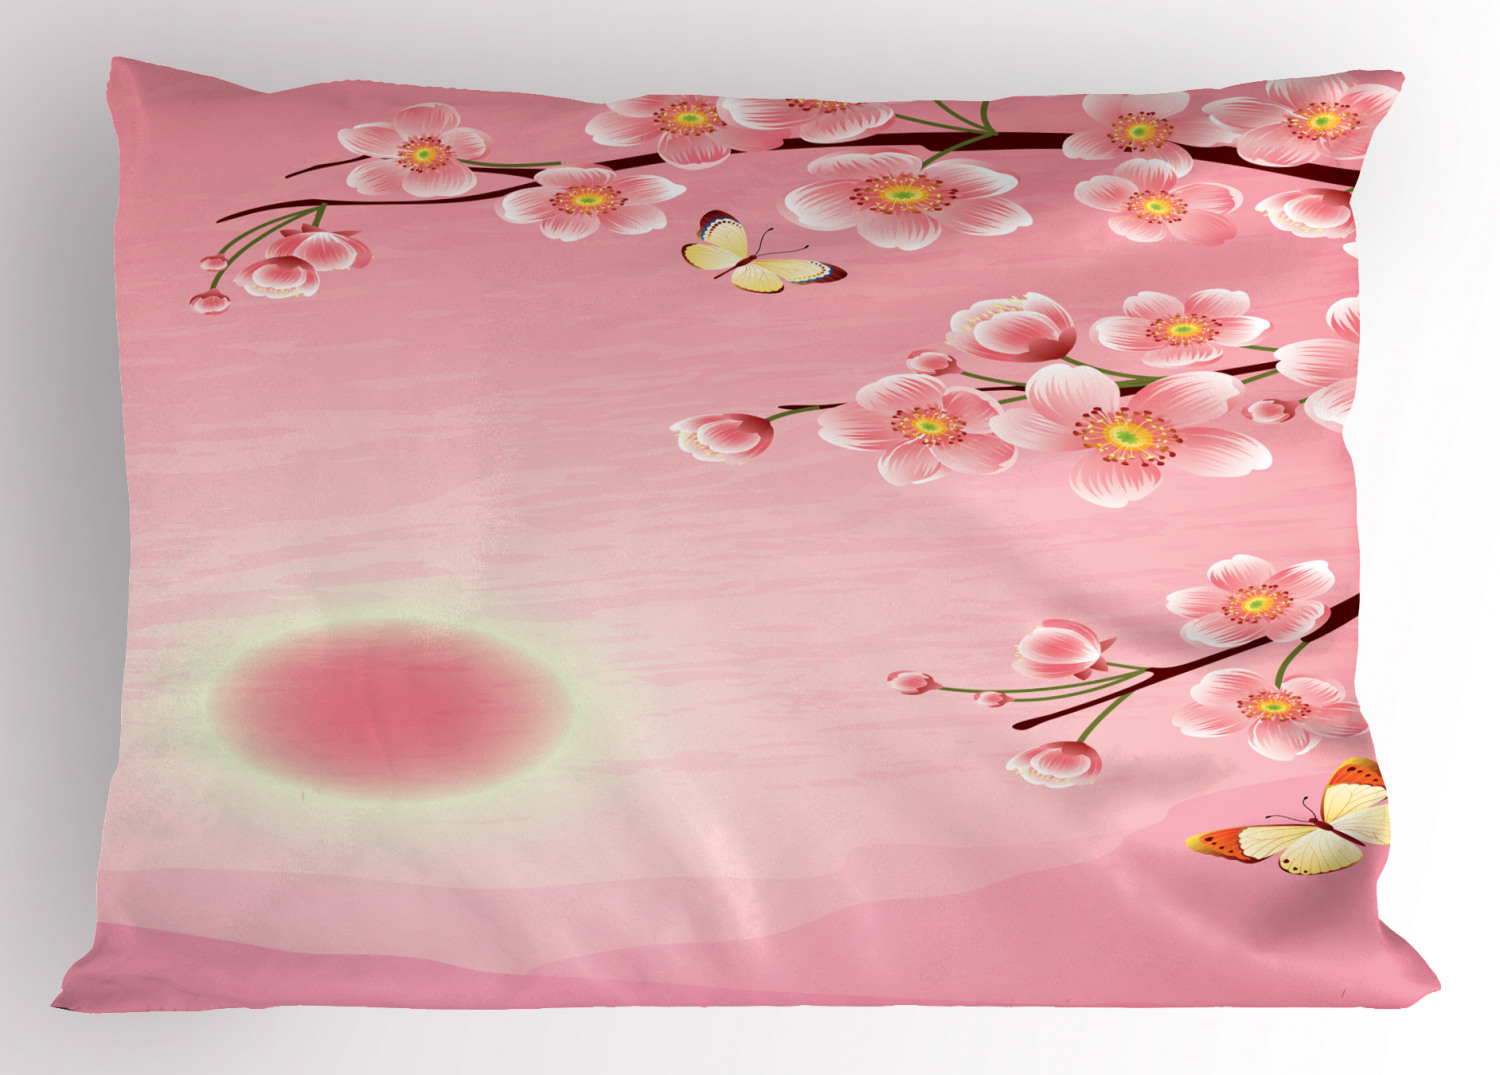 Details about   Oriental Asian Pillow Sham Decorative Pillowcase 3 Sizes Bedroom Decoration 